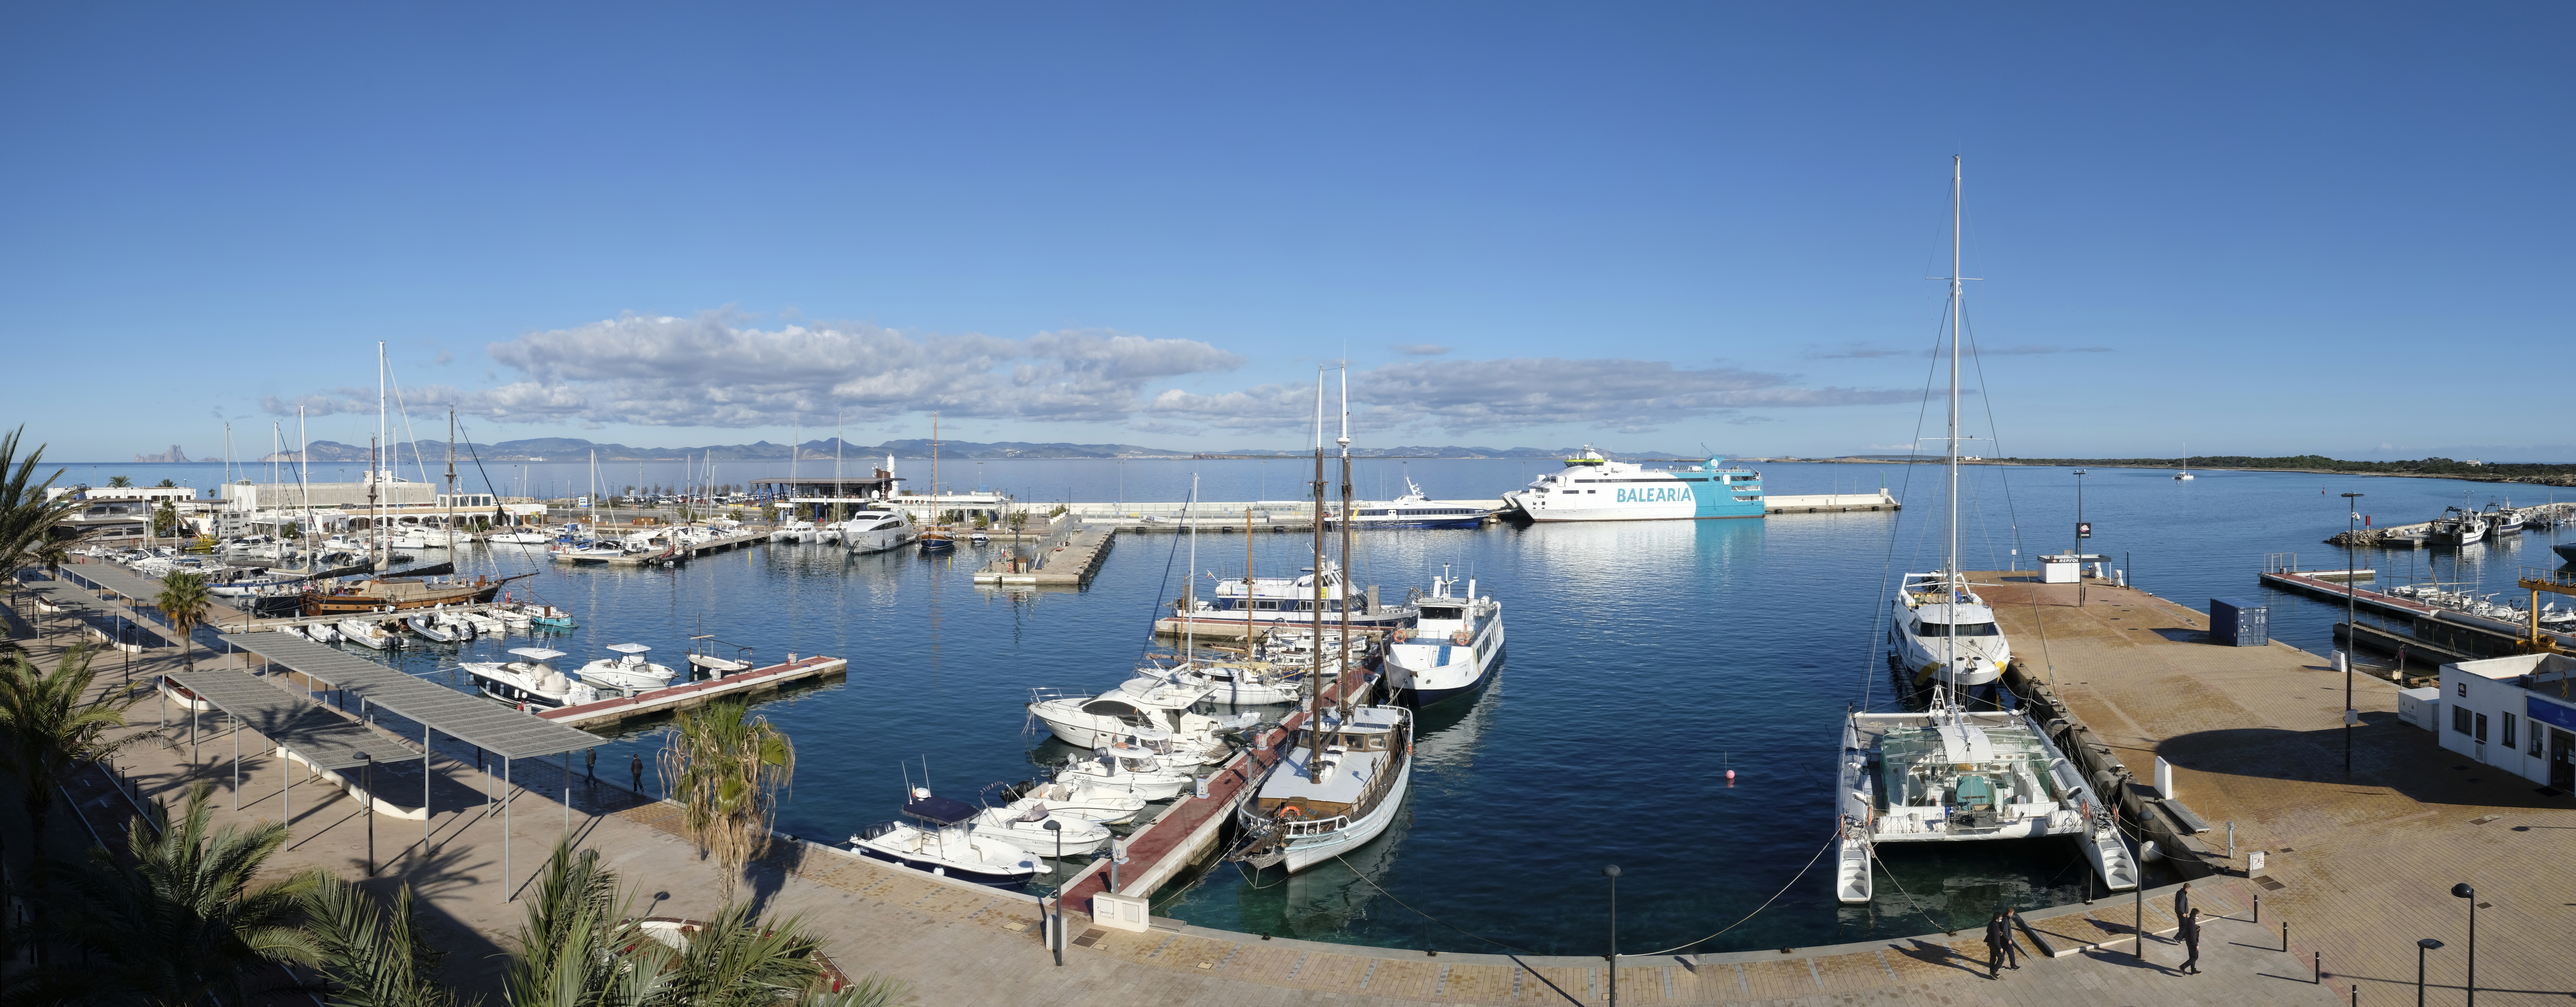 Puertos y Litorales Sostenibles wurde als vorteilhafteste Lösung für die Verwaltung eines Trockenhafens für kleine Charterboote im Hafen von La Savina ausgewählt